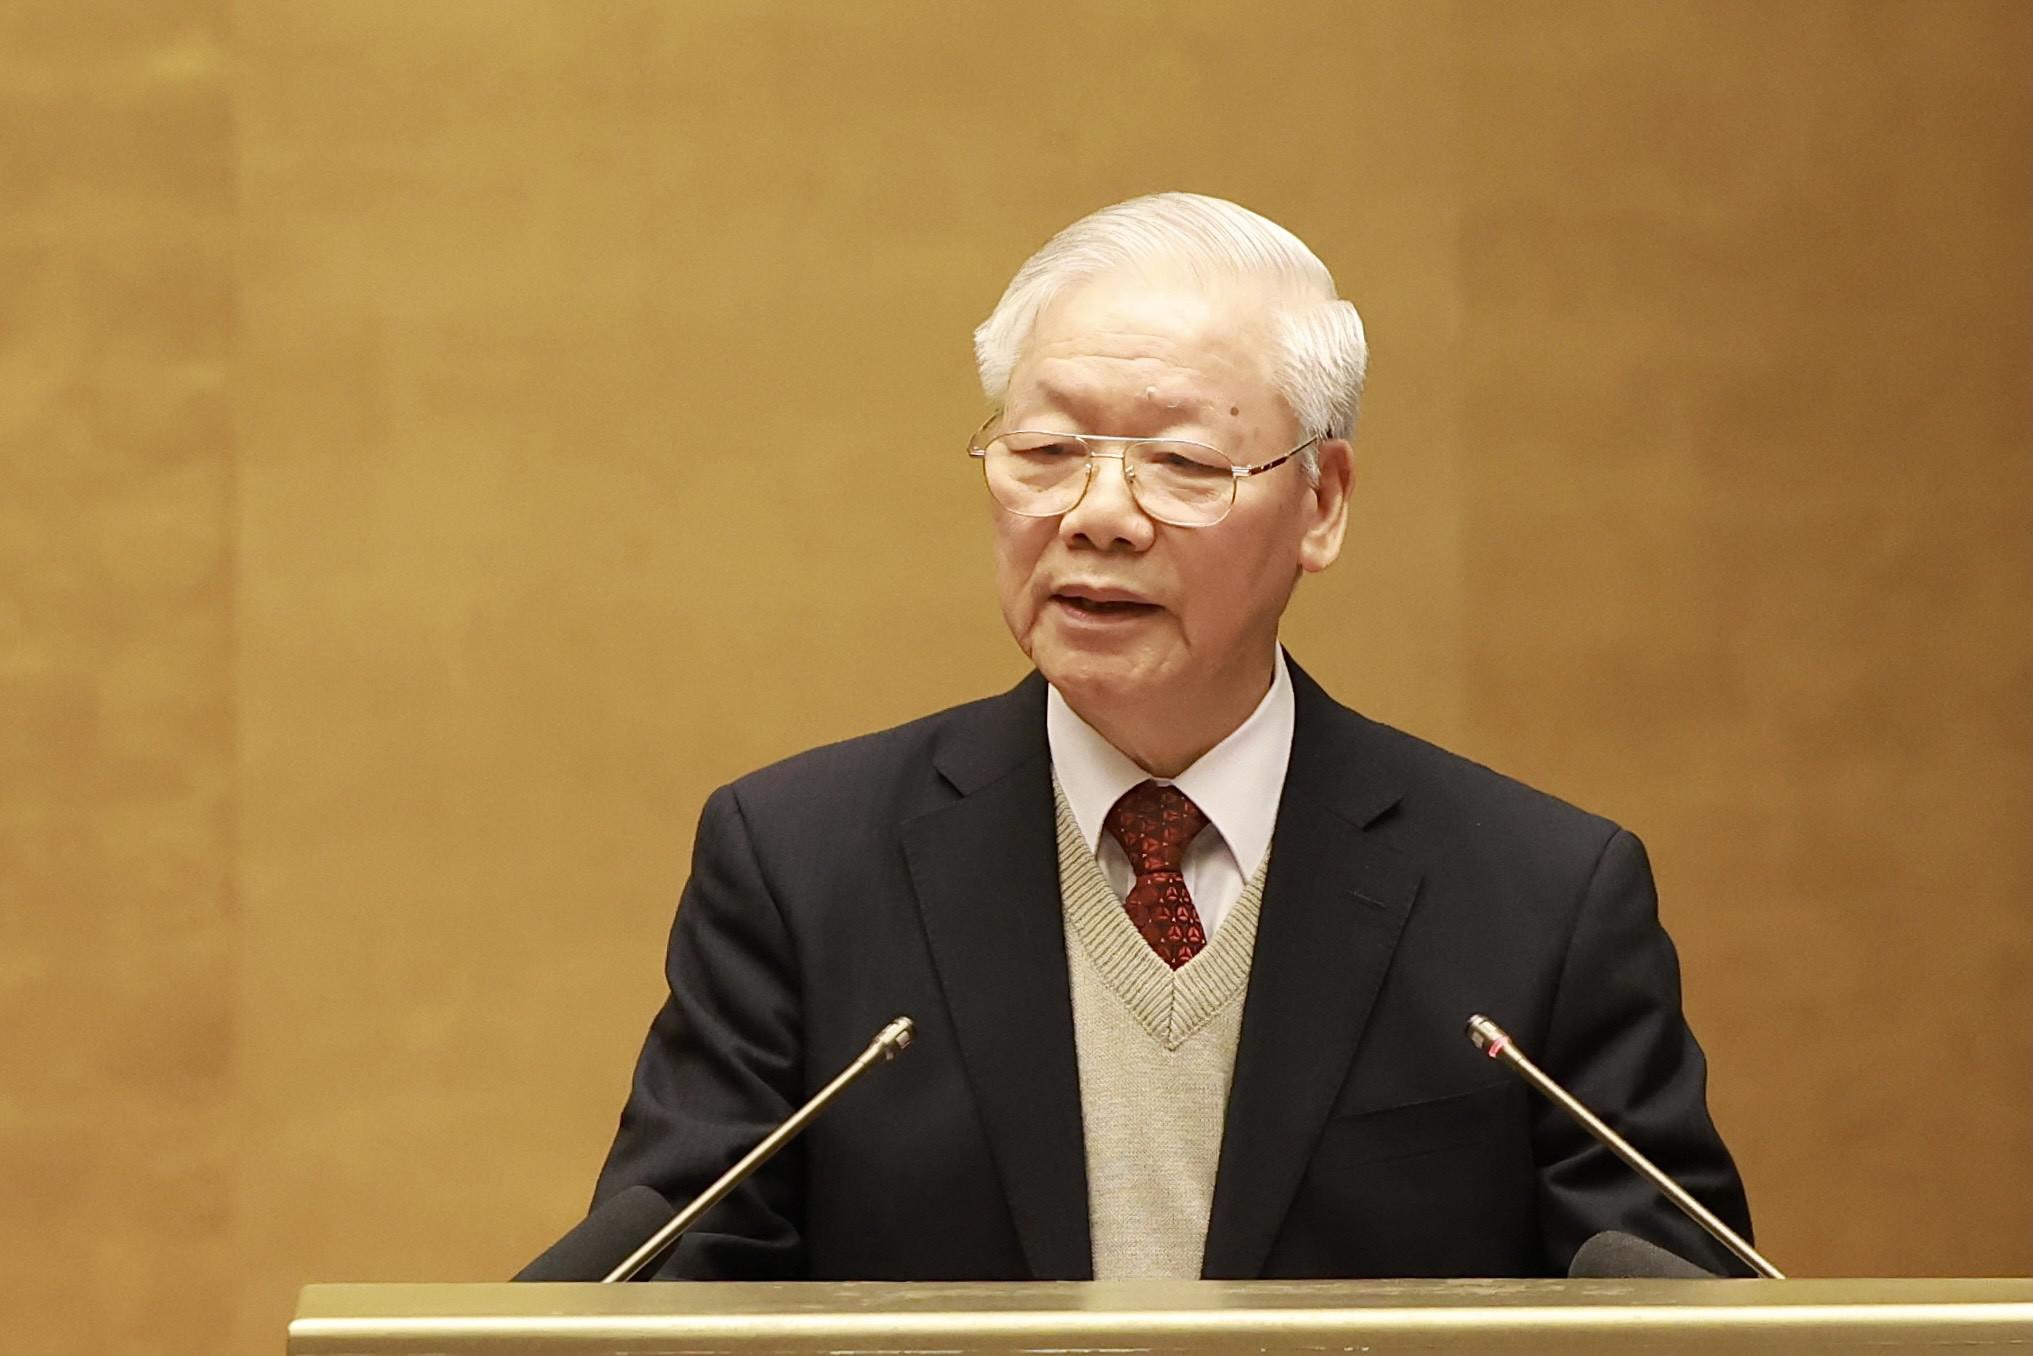 Toàn văn phát biểu của Tổng Bí thư Nguyễn Phú Trọng tại Hội nghị Văn hóa toàn quốc triển khai thực hiện Nghị quyết Đại hội đại biểu toàn quốc lần thứ XIII của Đảng - 1